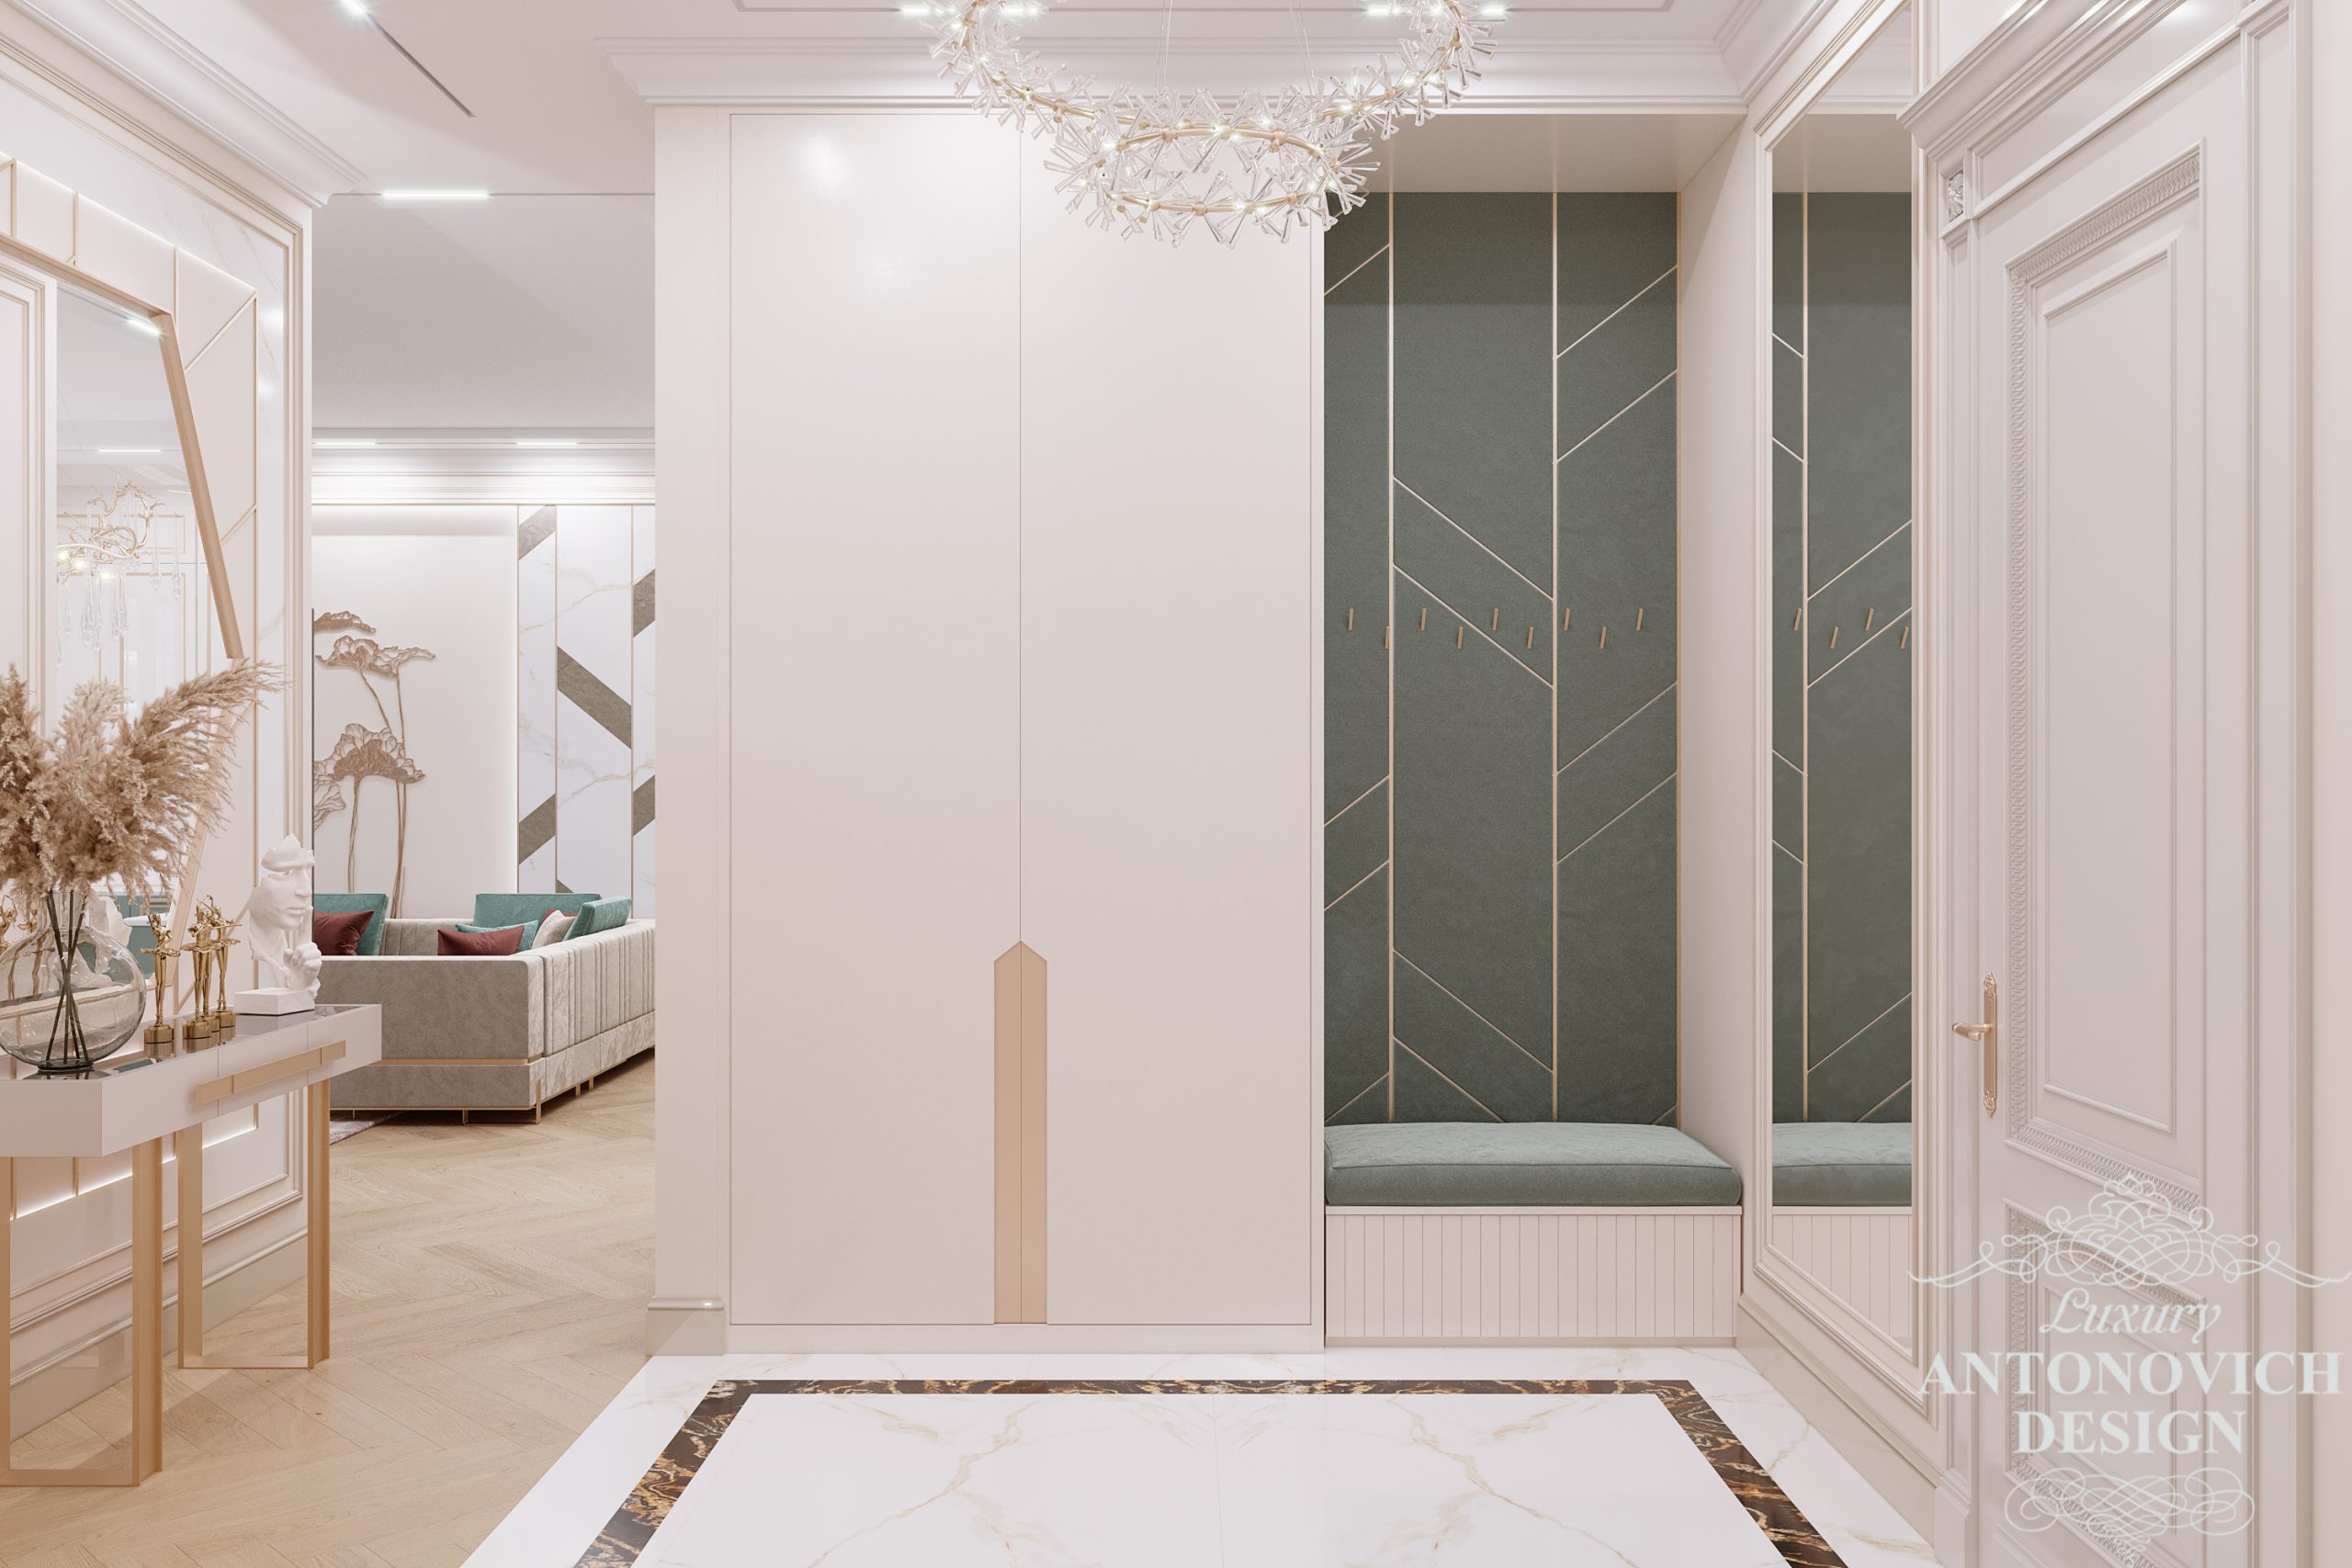 Дизайн коридора с малахитовой мягкой обивкой мебели и мраморным напольным покрытием в дизайнерском проекте квартиры